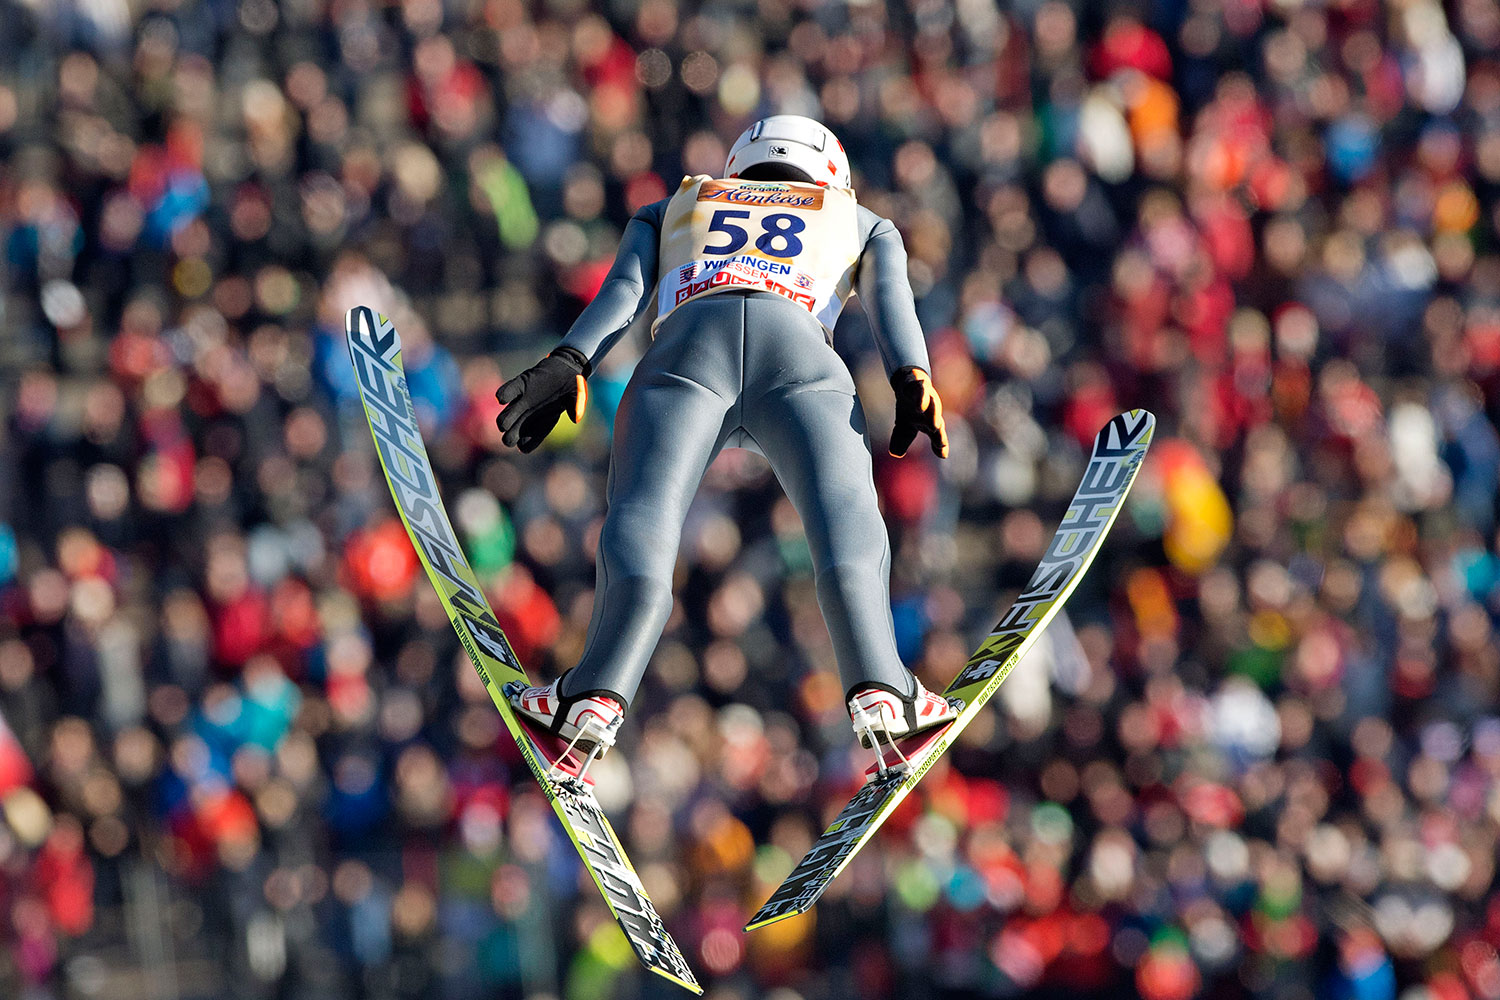 Kamil Stoch se proclama Campeón del Mundo de saltos de esquí en Alemania